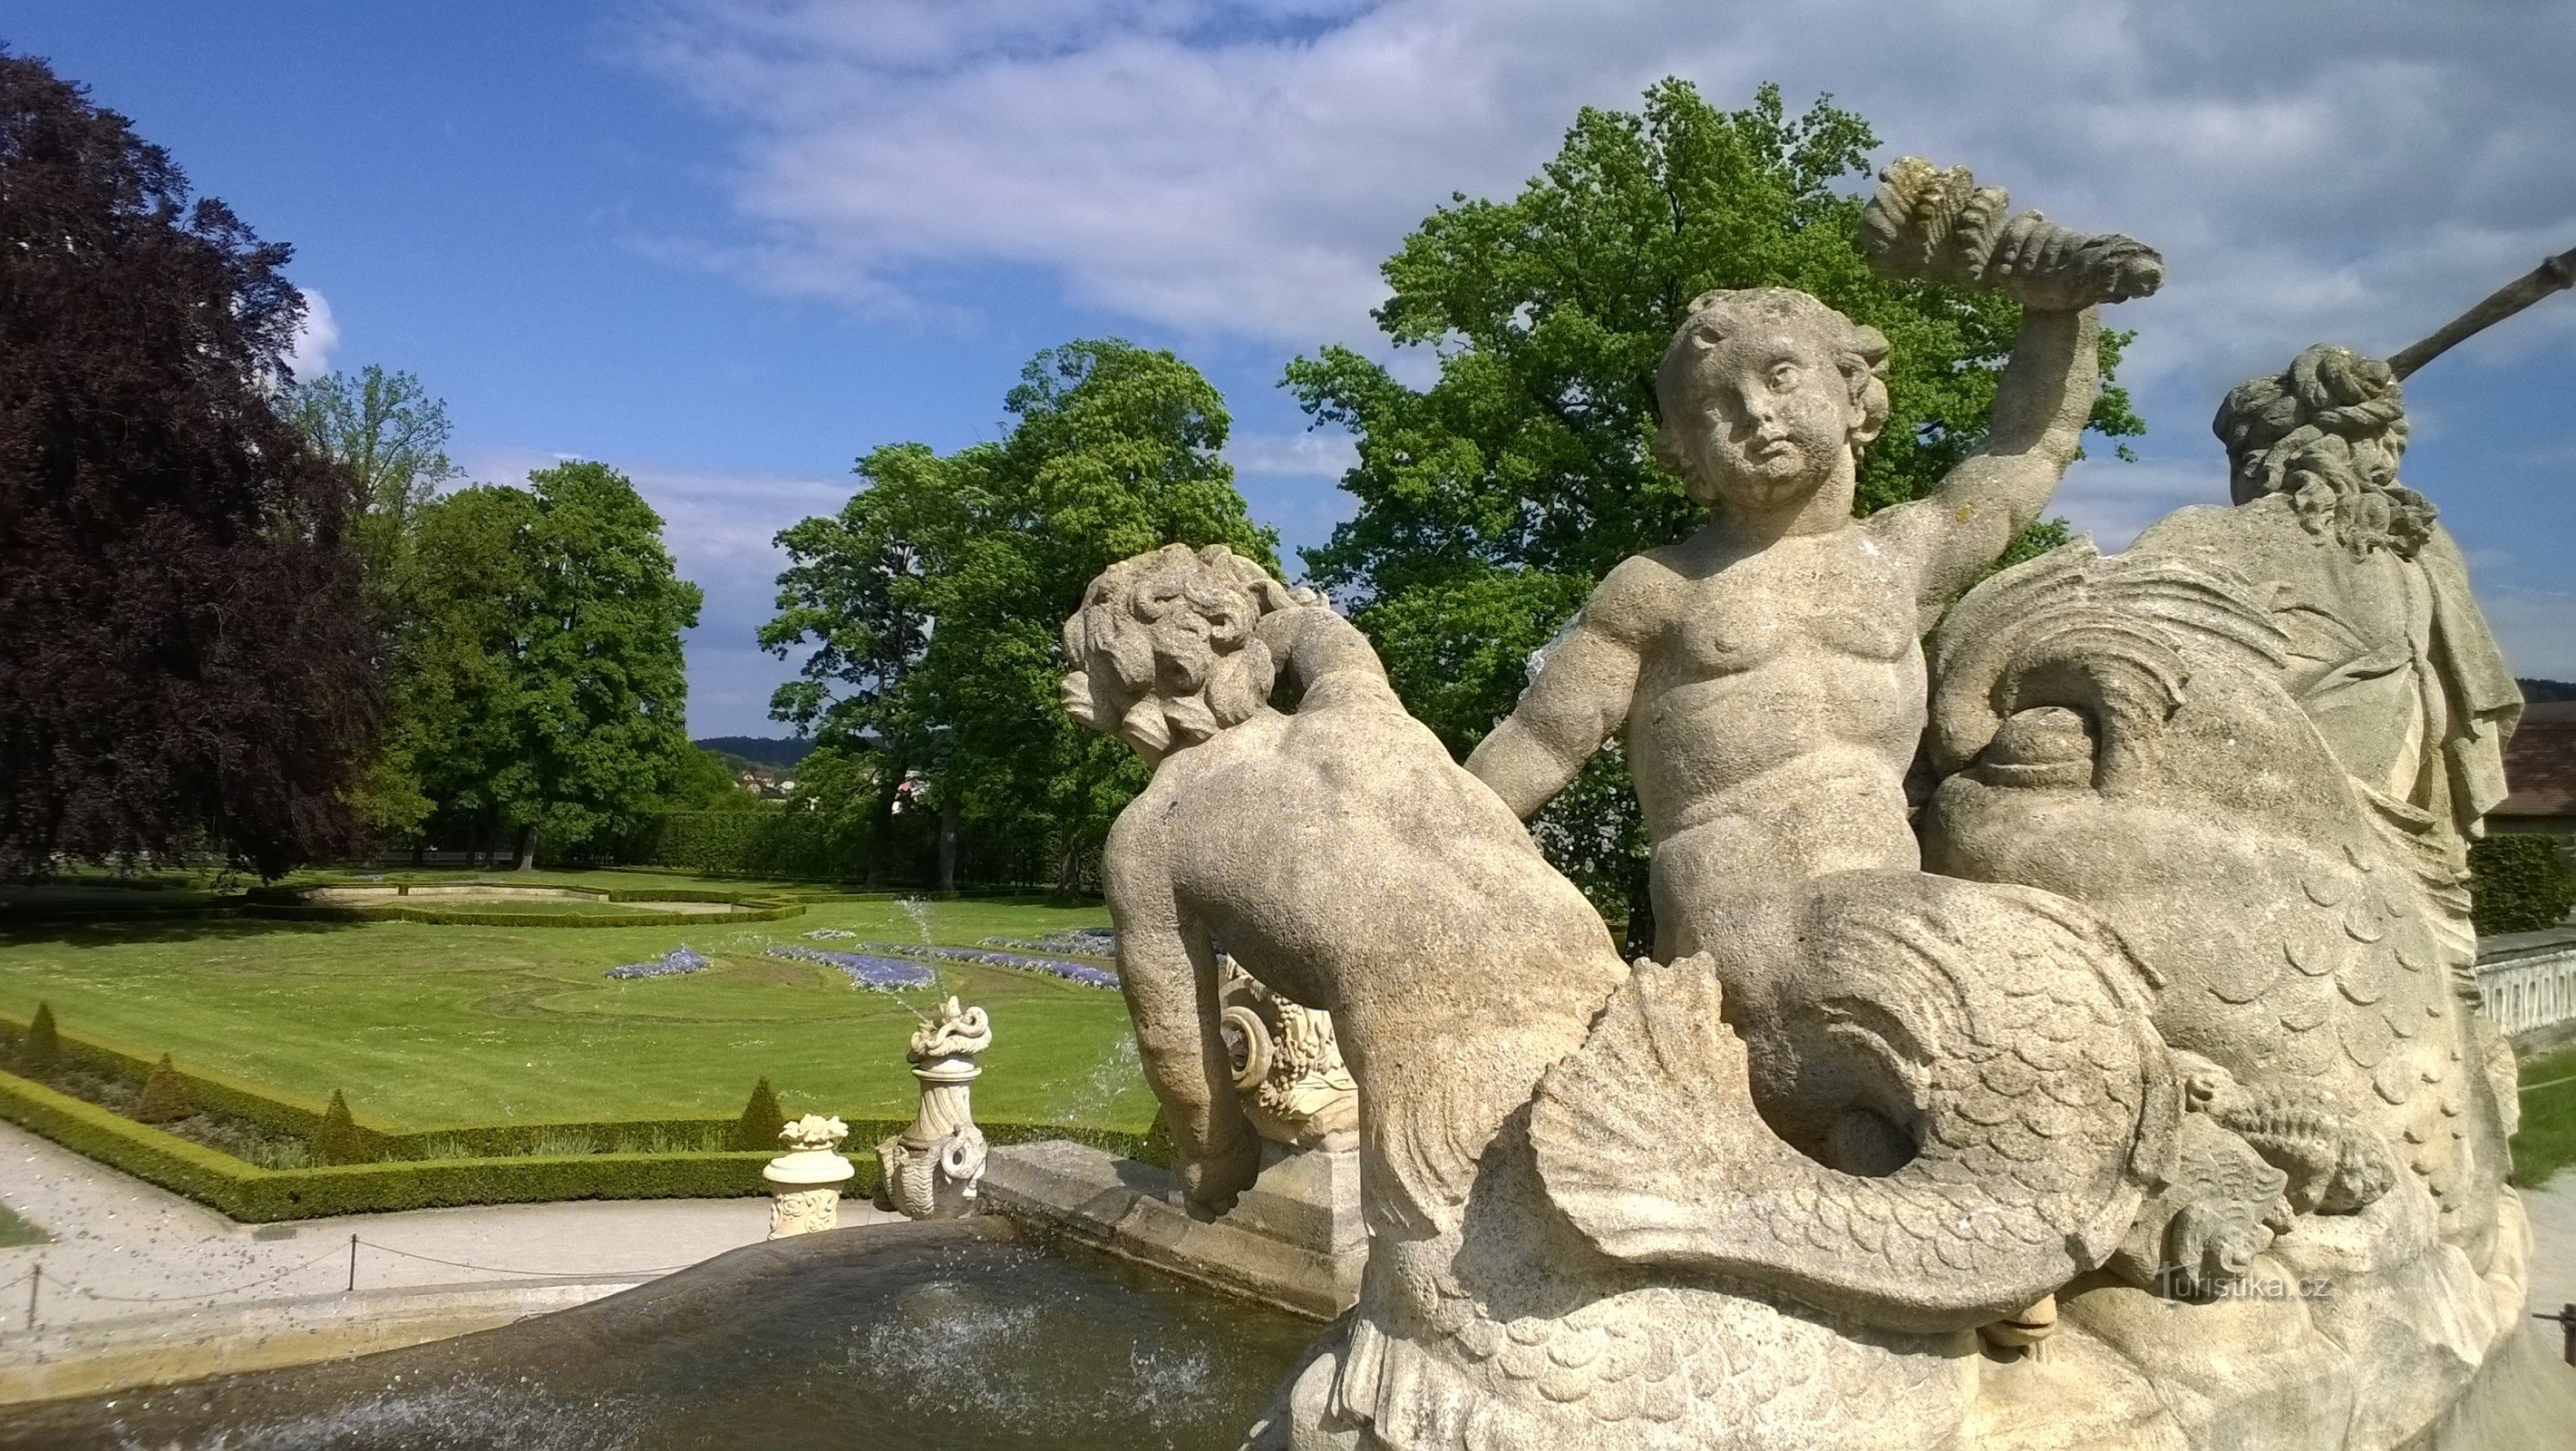 Skulpturen in einem riesigen Garten.